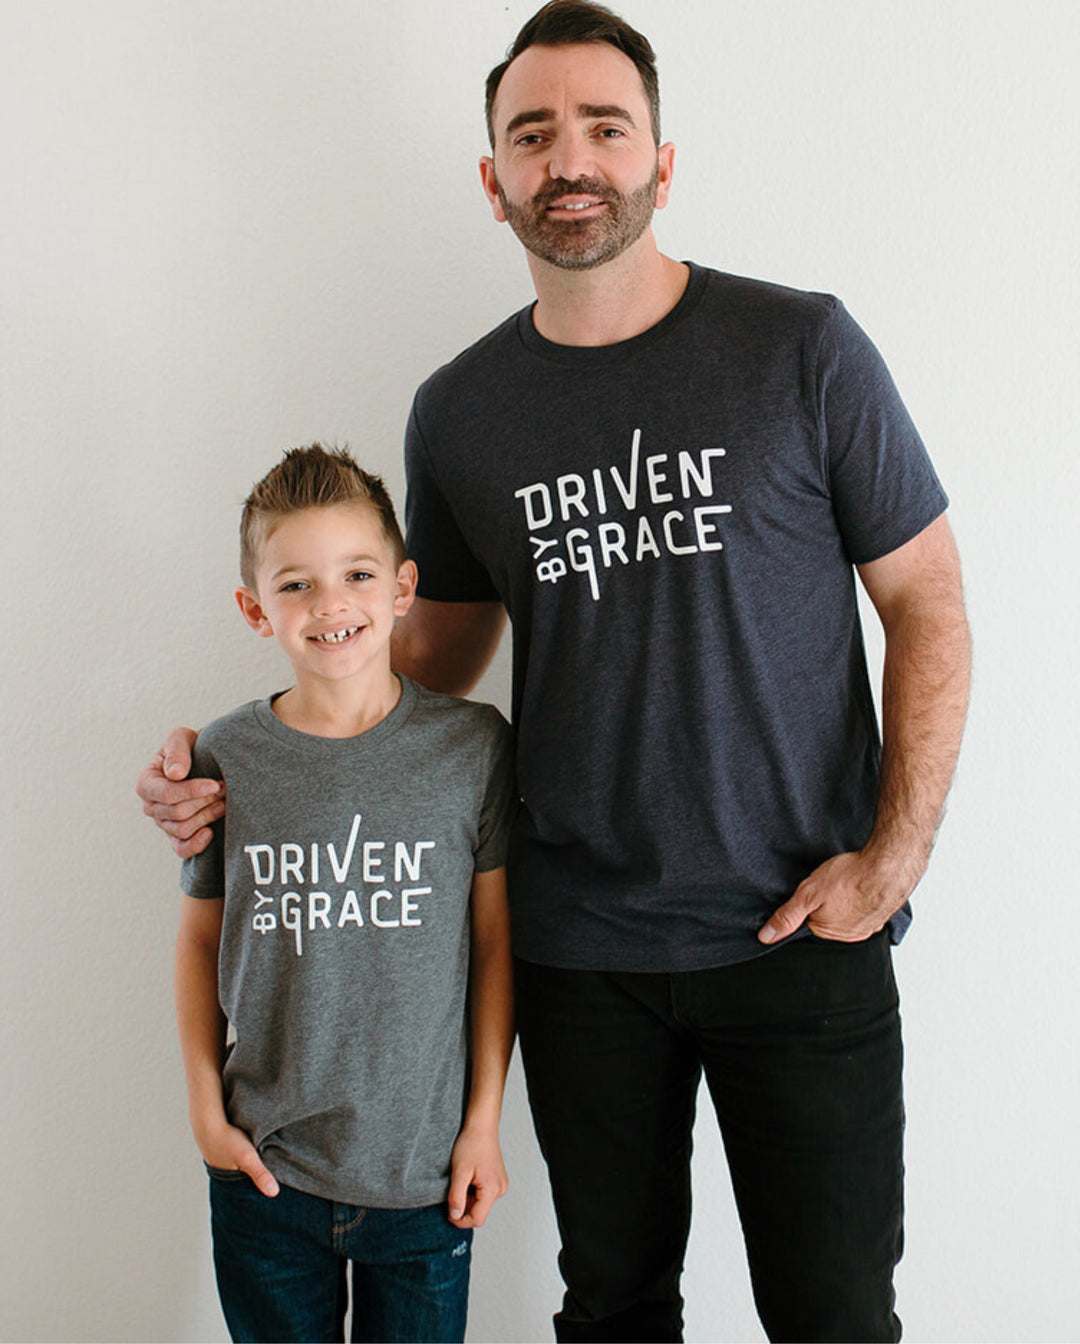 Driven By Grace | T-shirt (Men's)